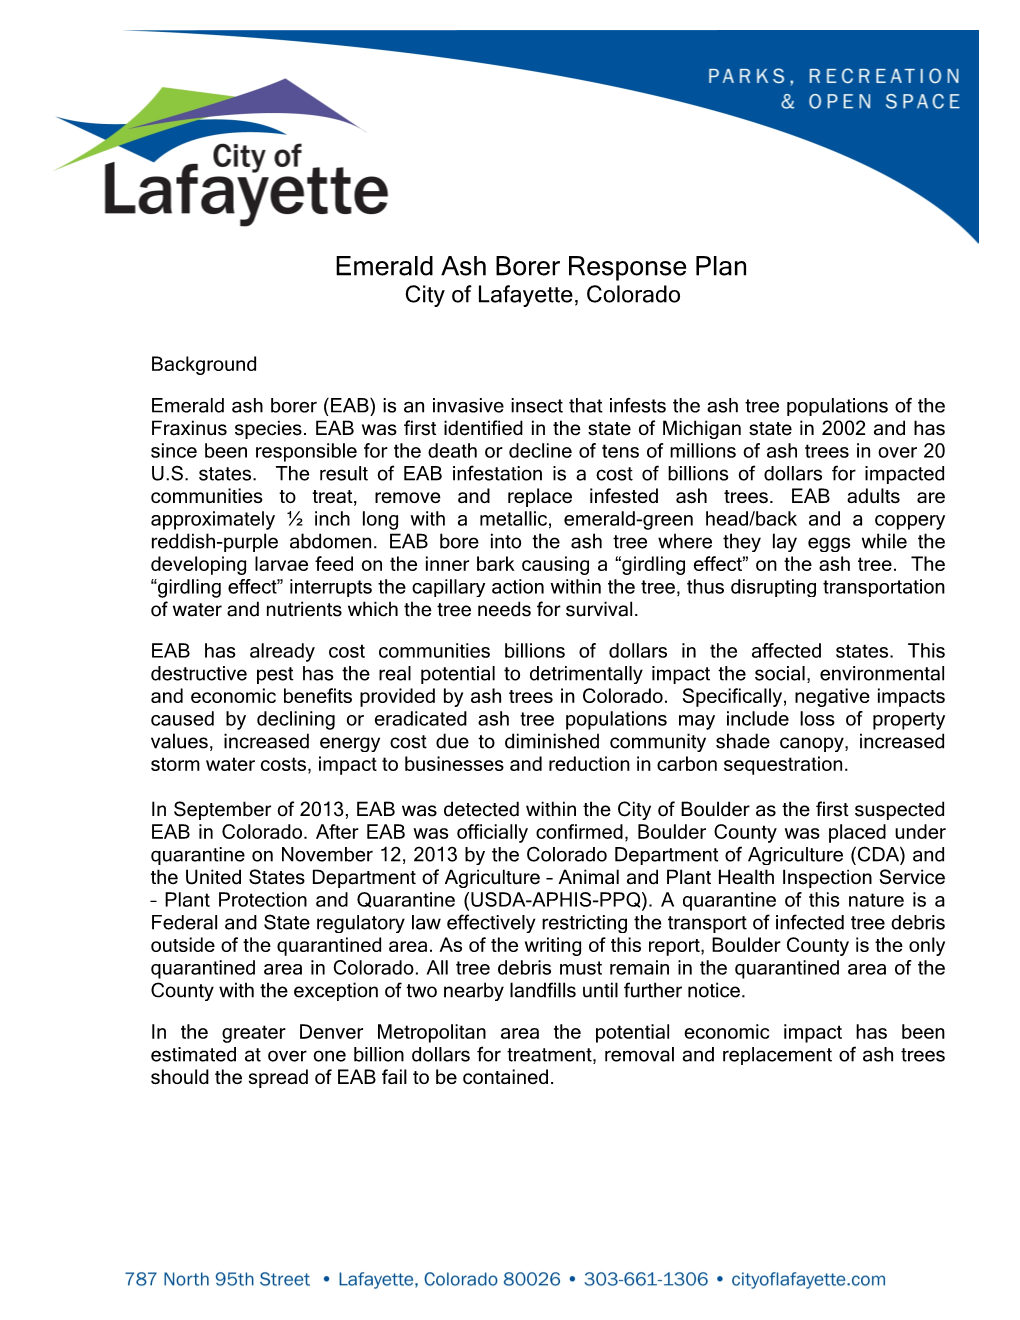 View City of Lafayette Emerald Ash Borer Response Plan